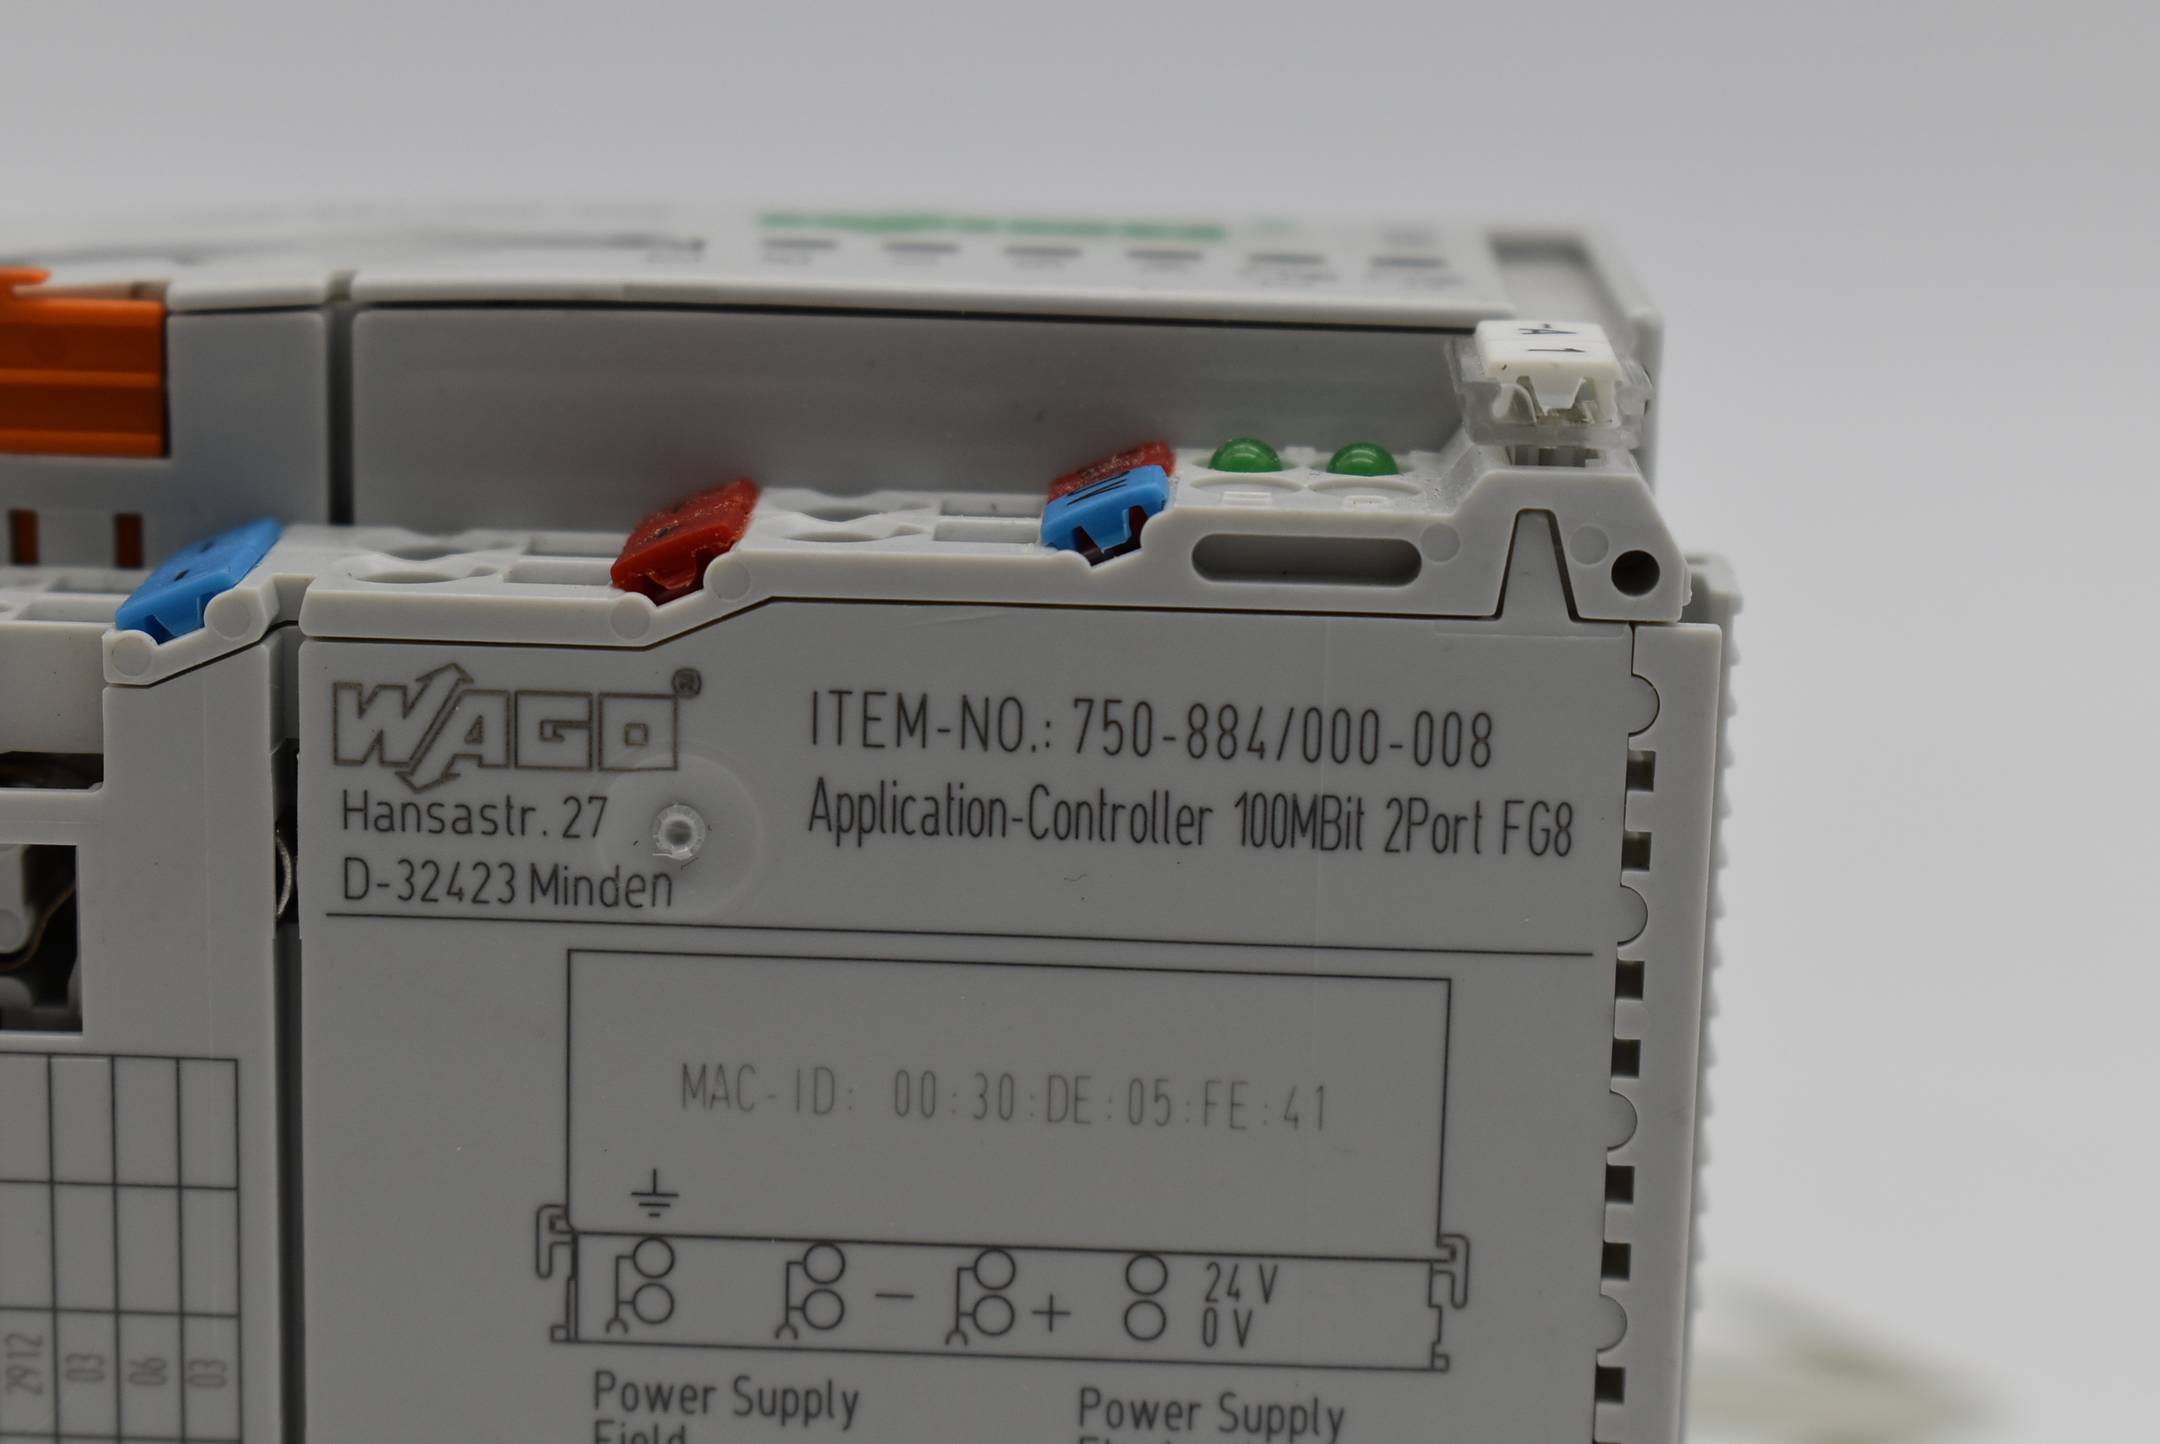 WAGO Controller flexROOM® FG8 750-884/000-008